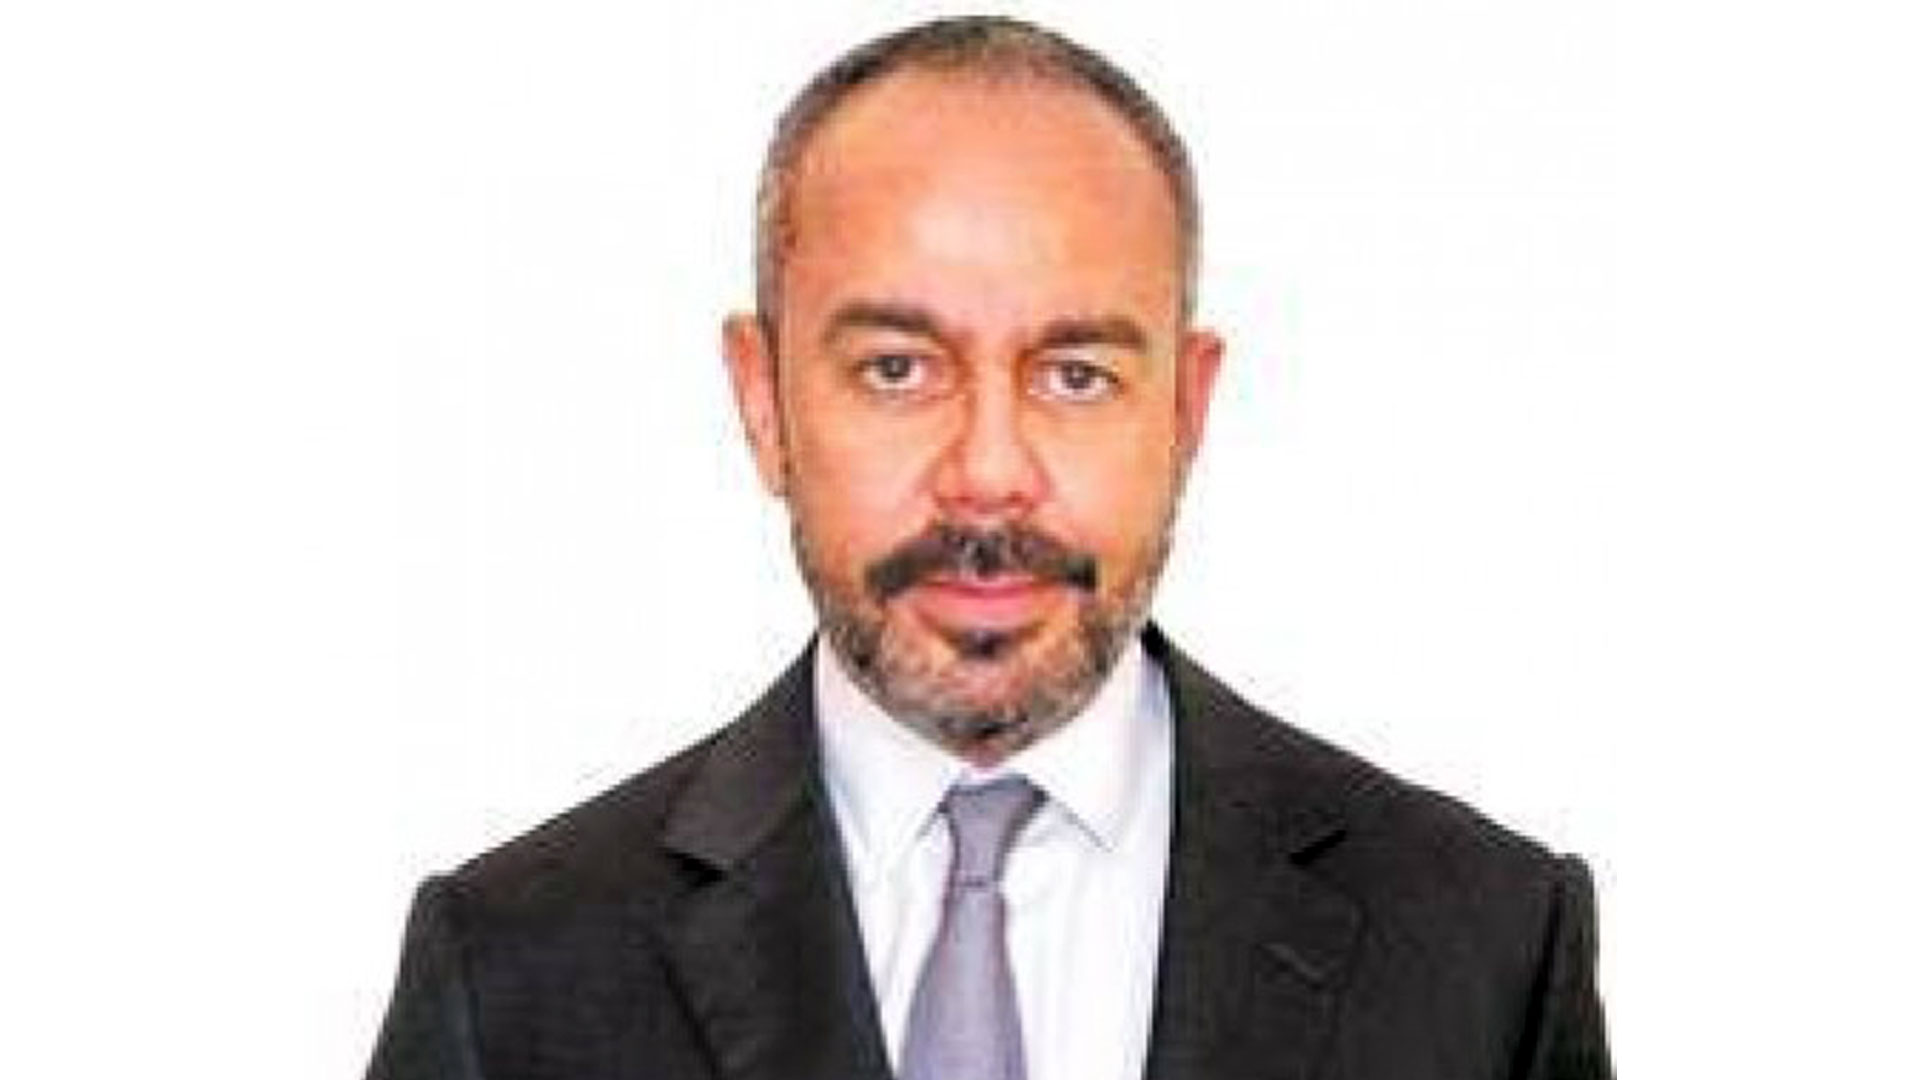 El ejecutivo de Fintech, David Martínez, aparece para Wall Street como el acreedor más cercano al Gobierno